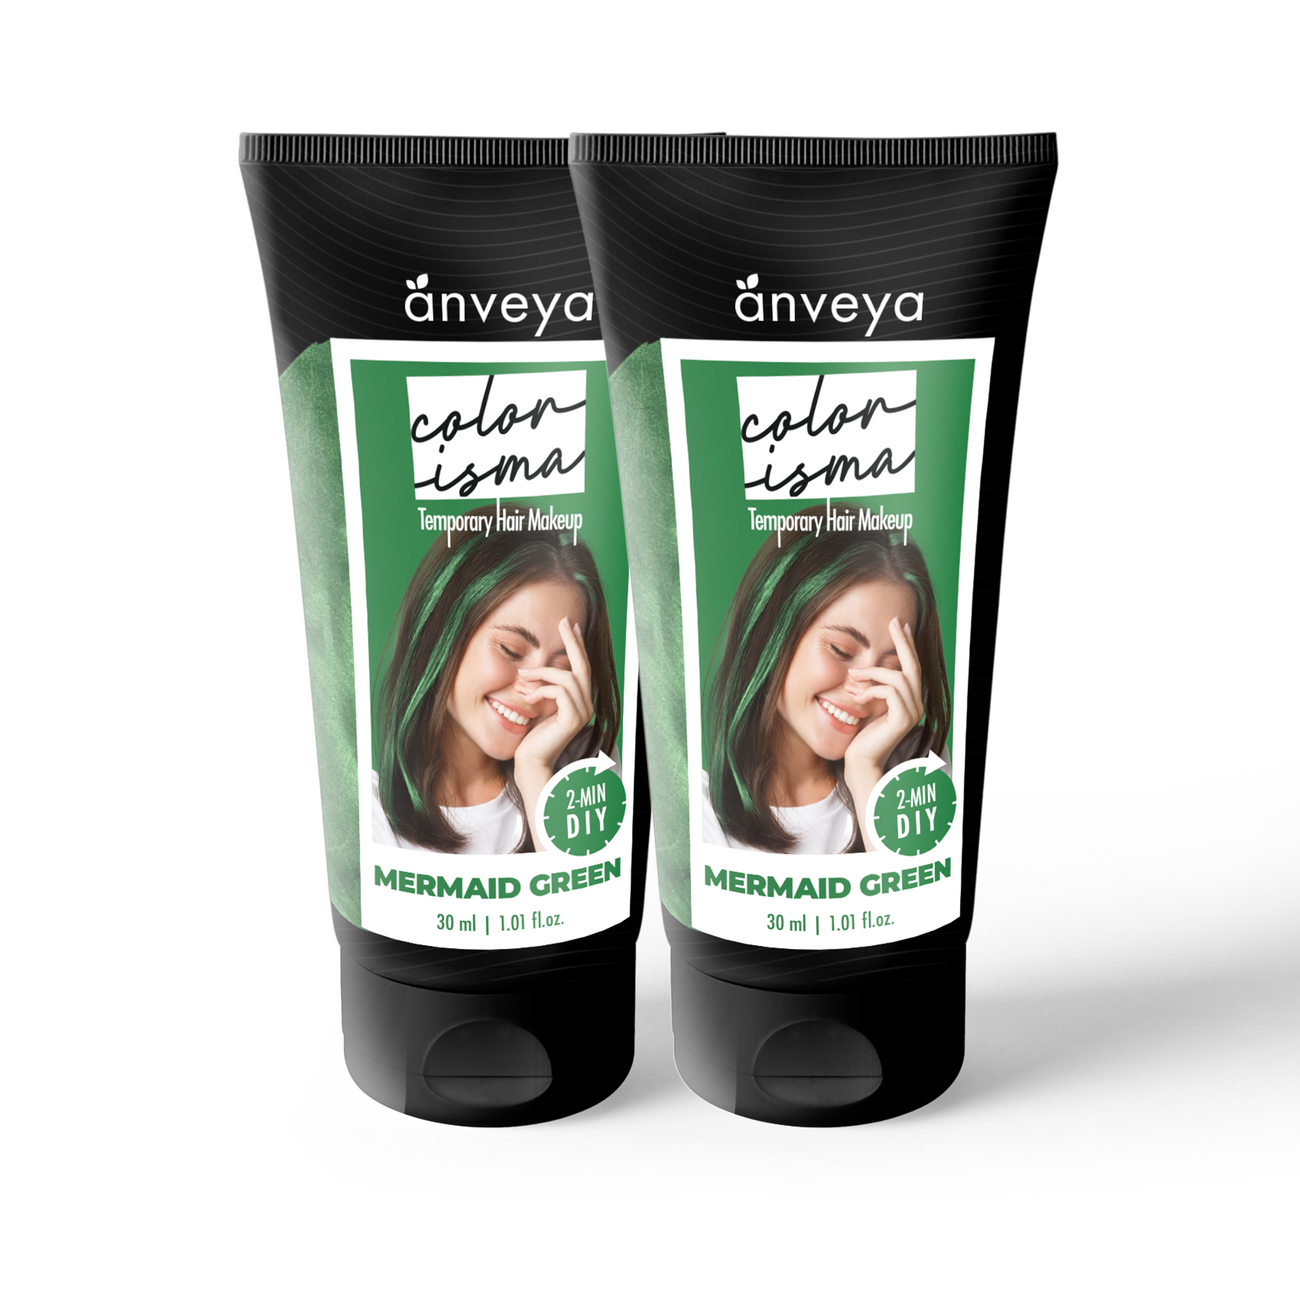 Anveya Colorisma Mermaid Green Temporary Hair Color, Pack of 2, 30ml each